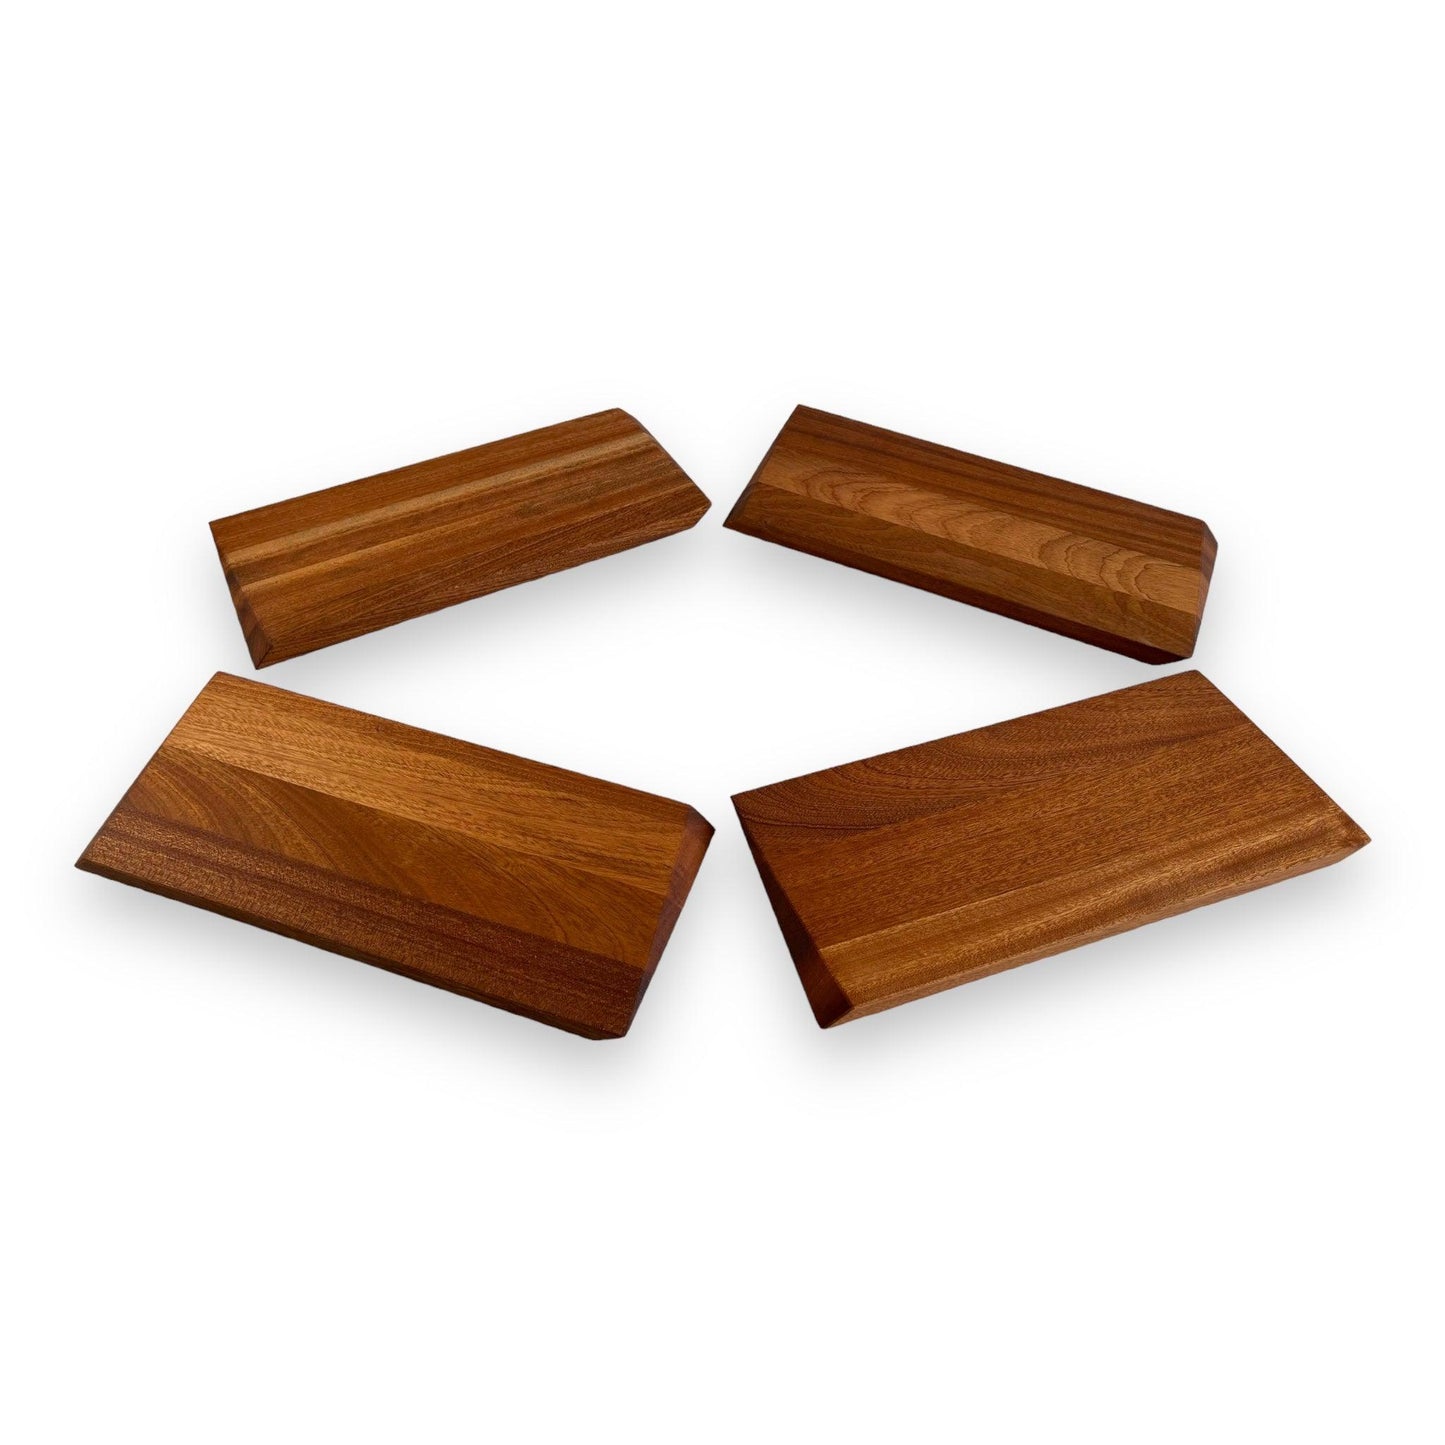 Sapele mahogany wood serving plate, Z-cut, 6'' X 14'' - BOISWOOD